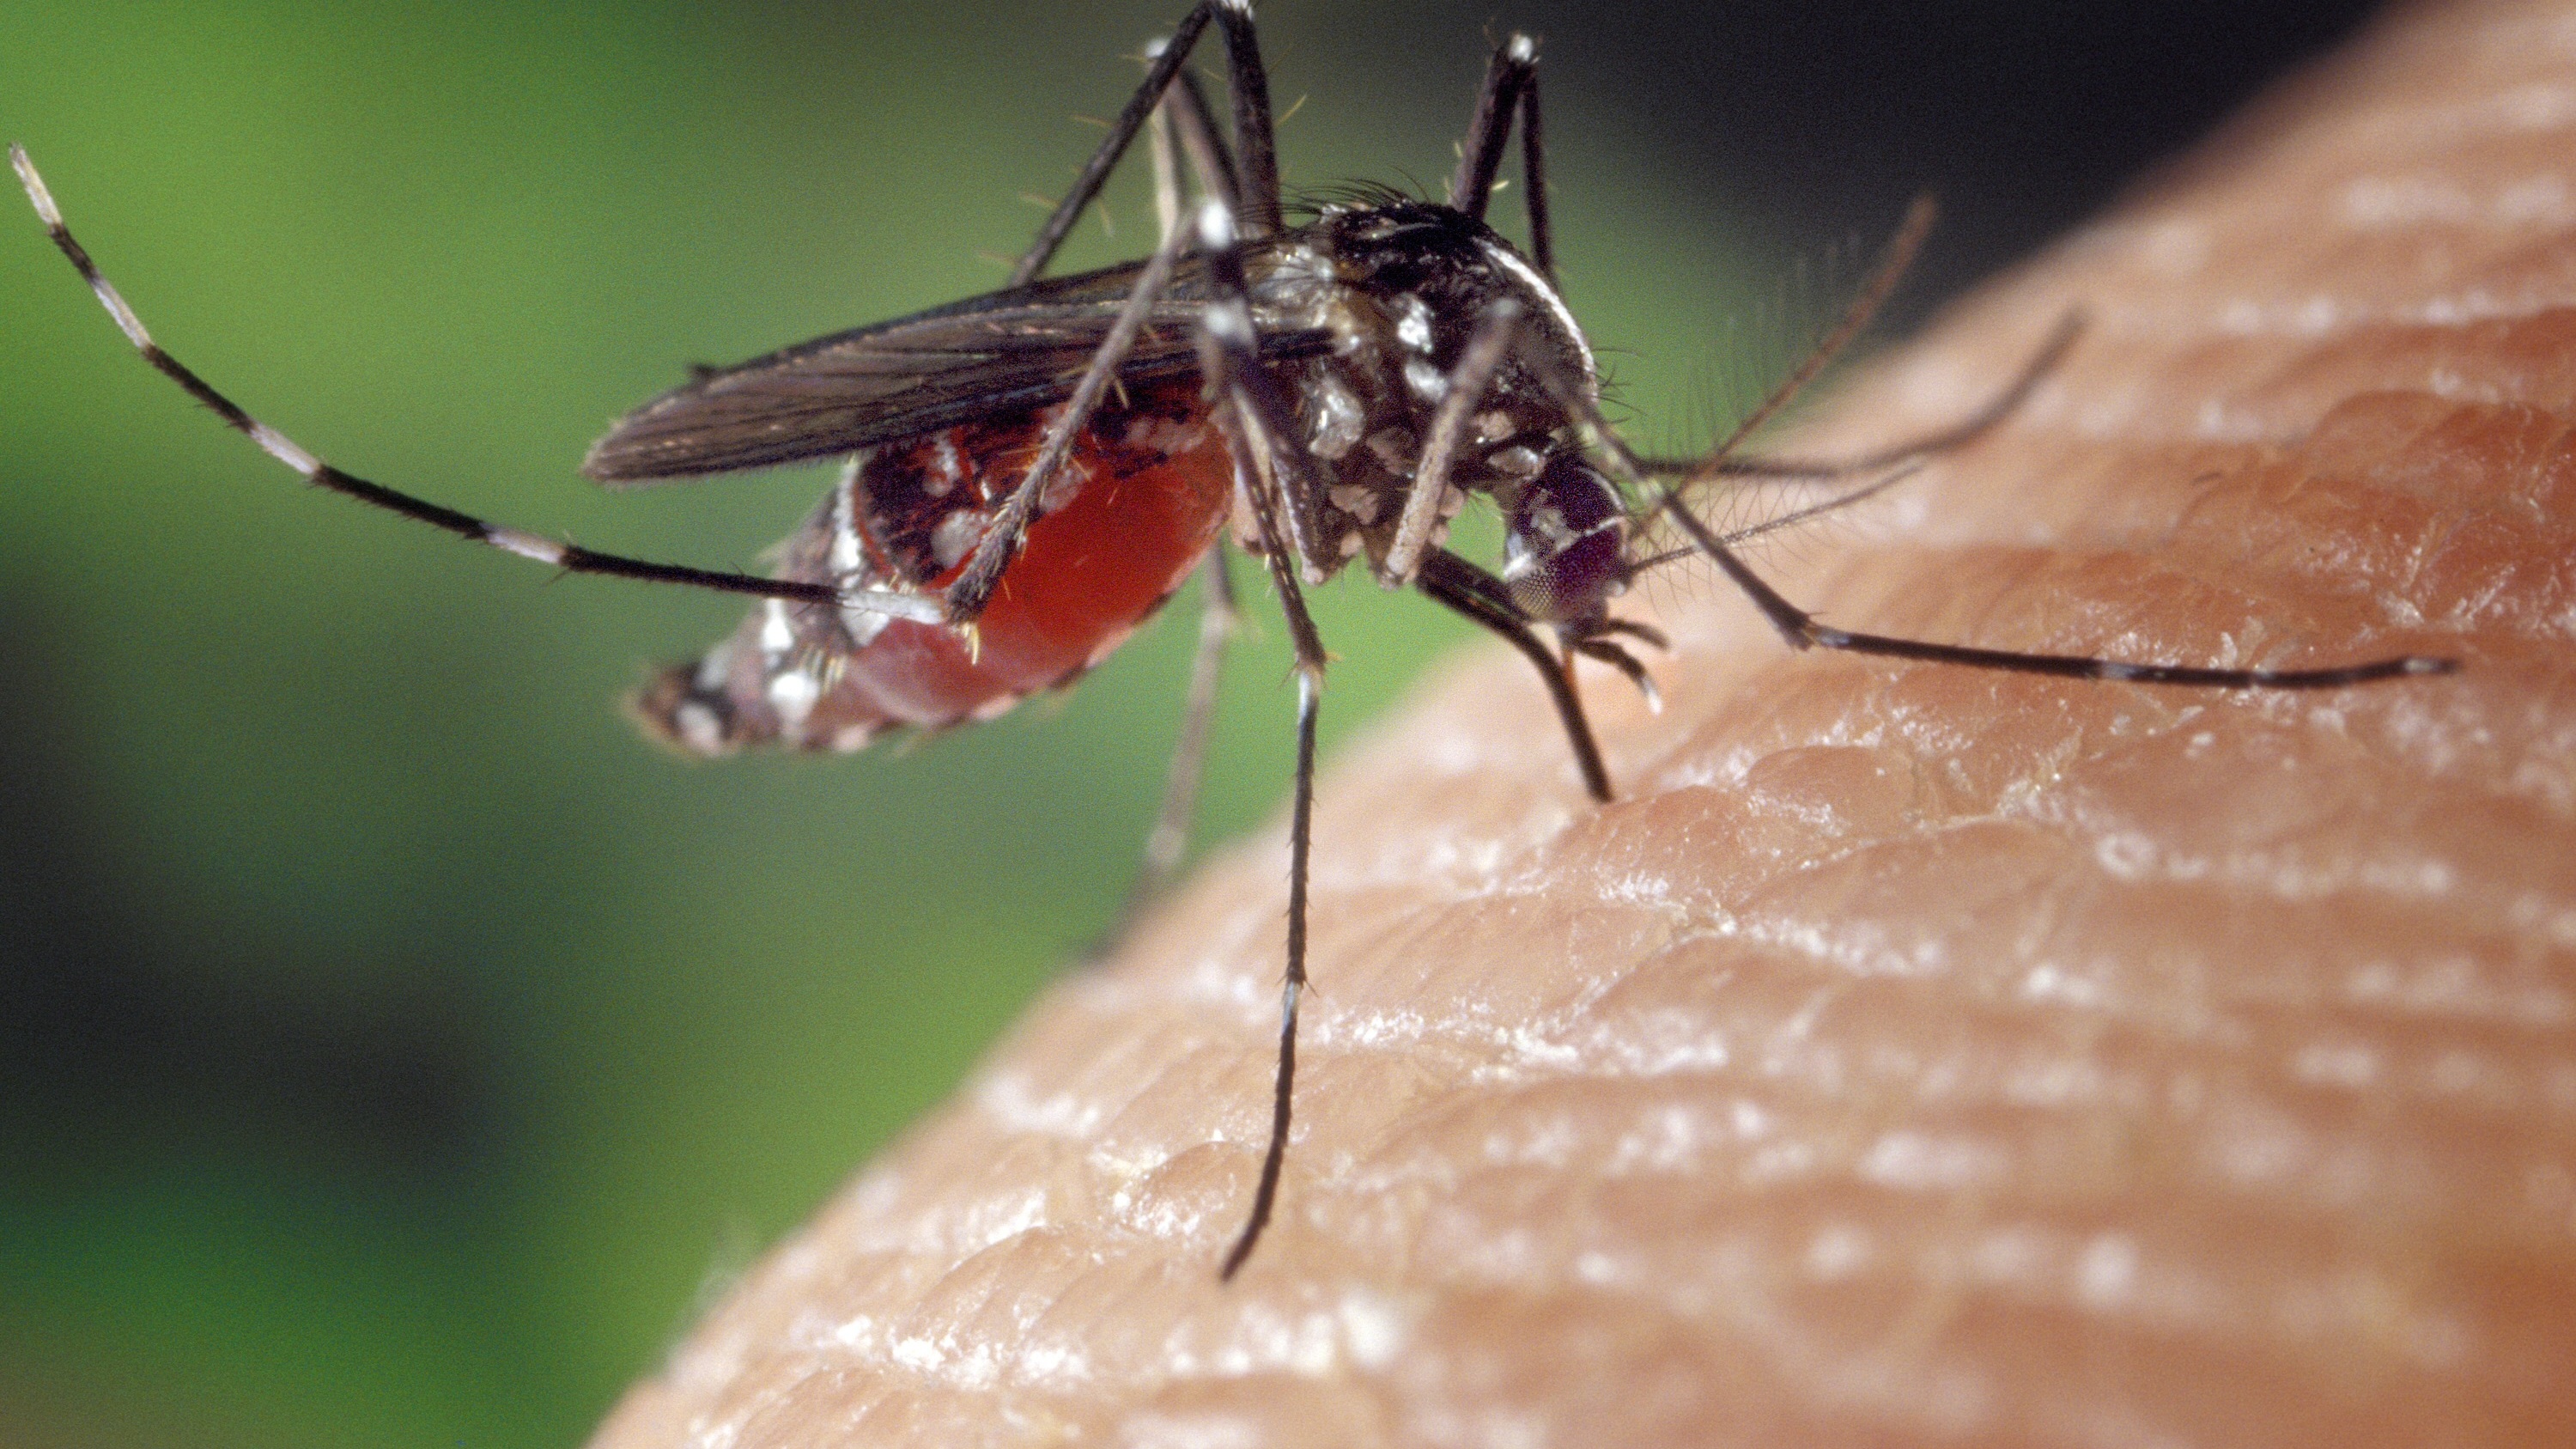 «Из-за частых дождей летом в Ростовской области появилось множество комаров, которые тоже стимулируют передачу этого заболевания», — отмечает врач терапевт, не пожелавший публиковать свое имя.